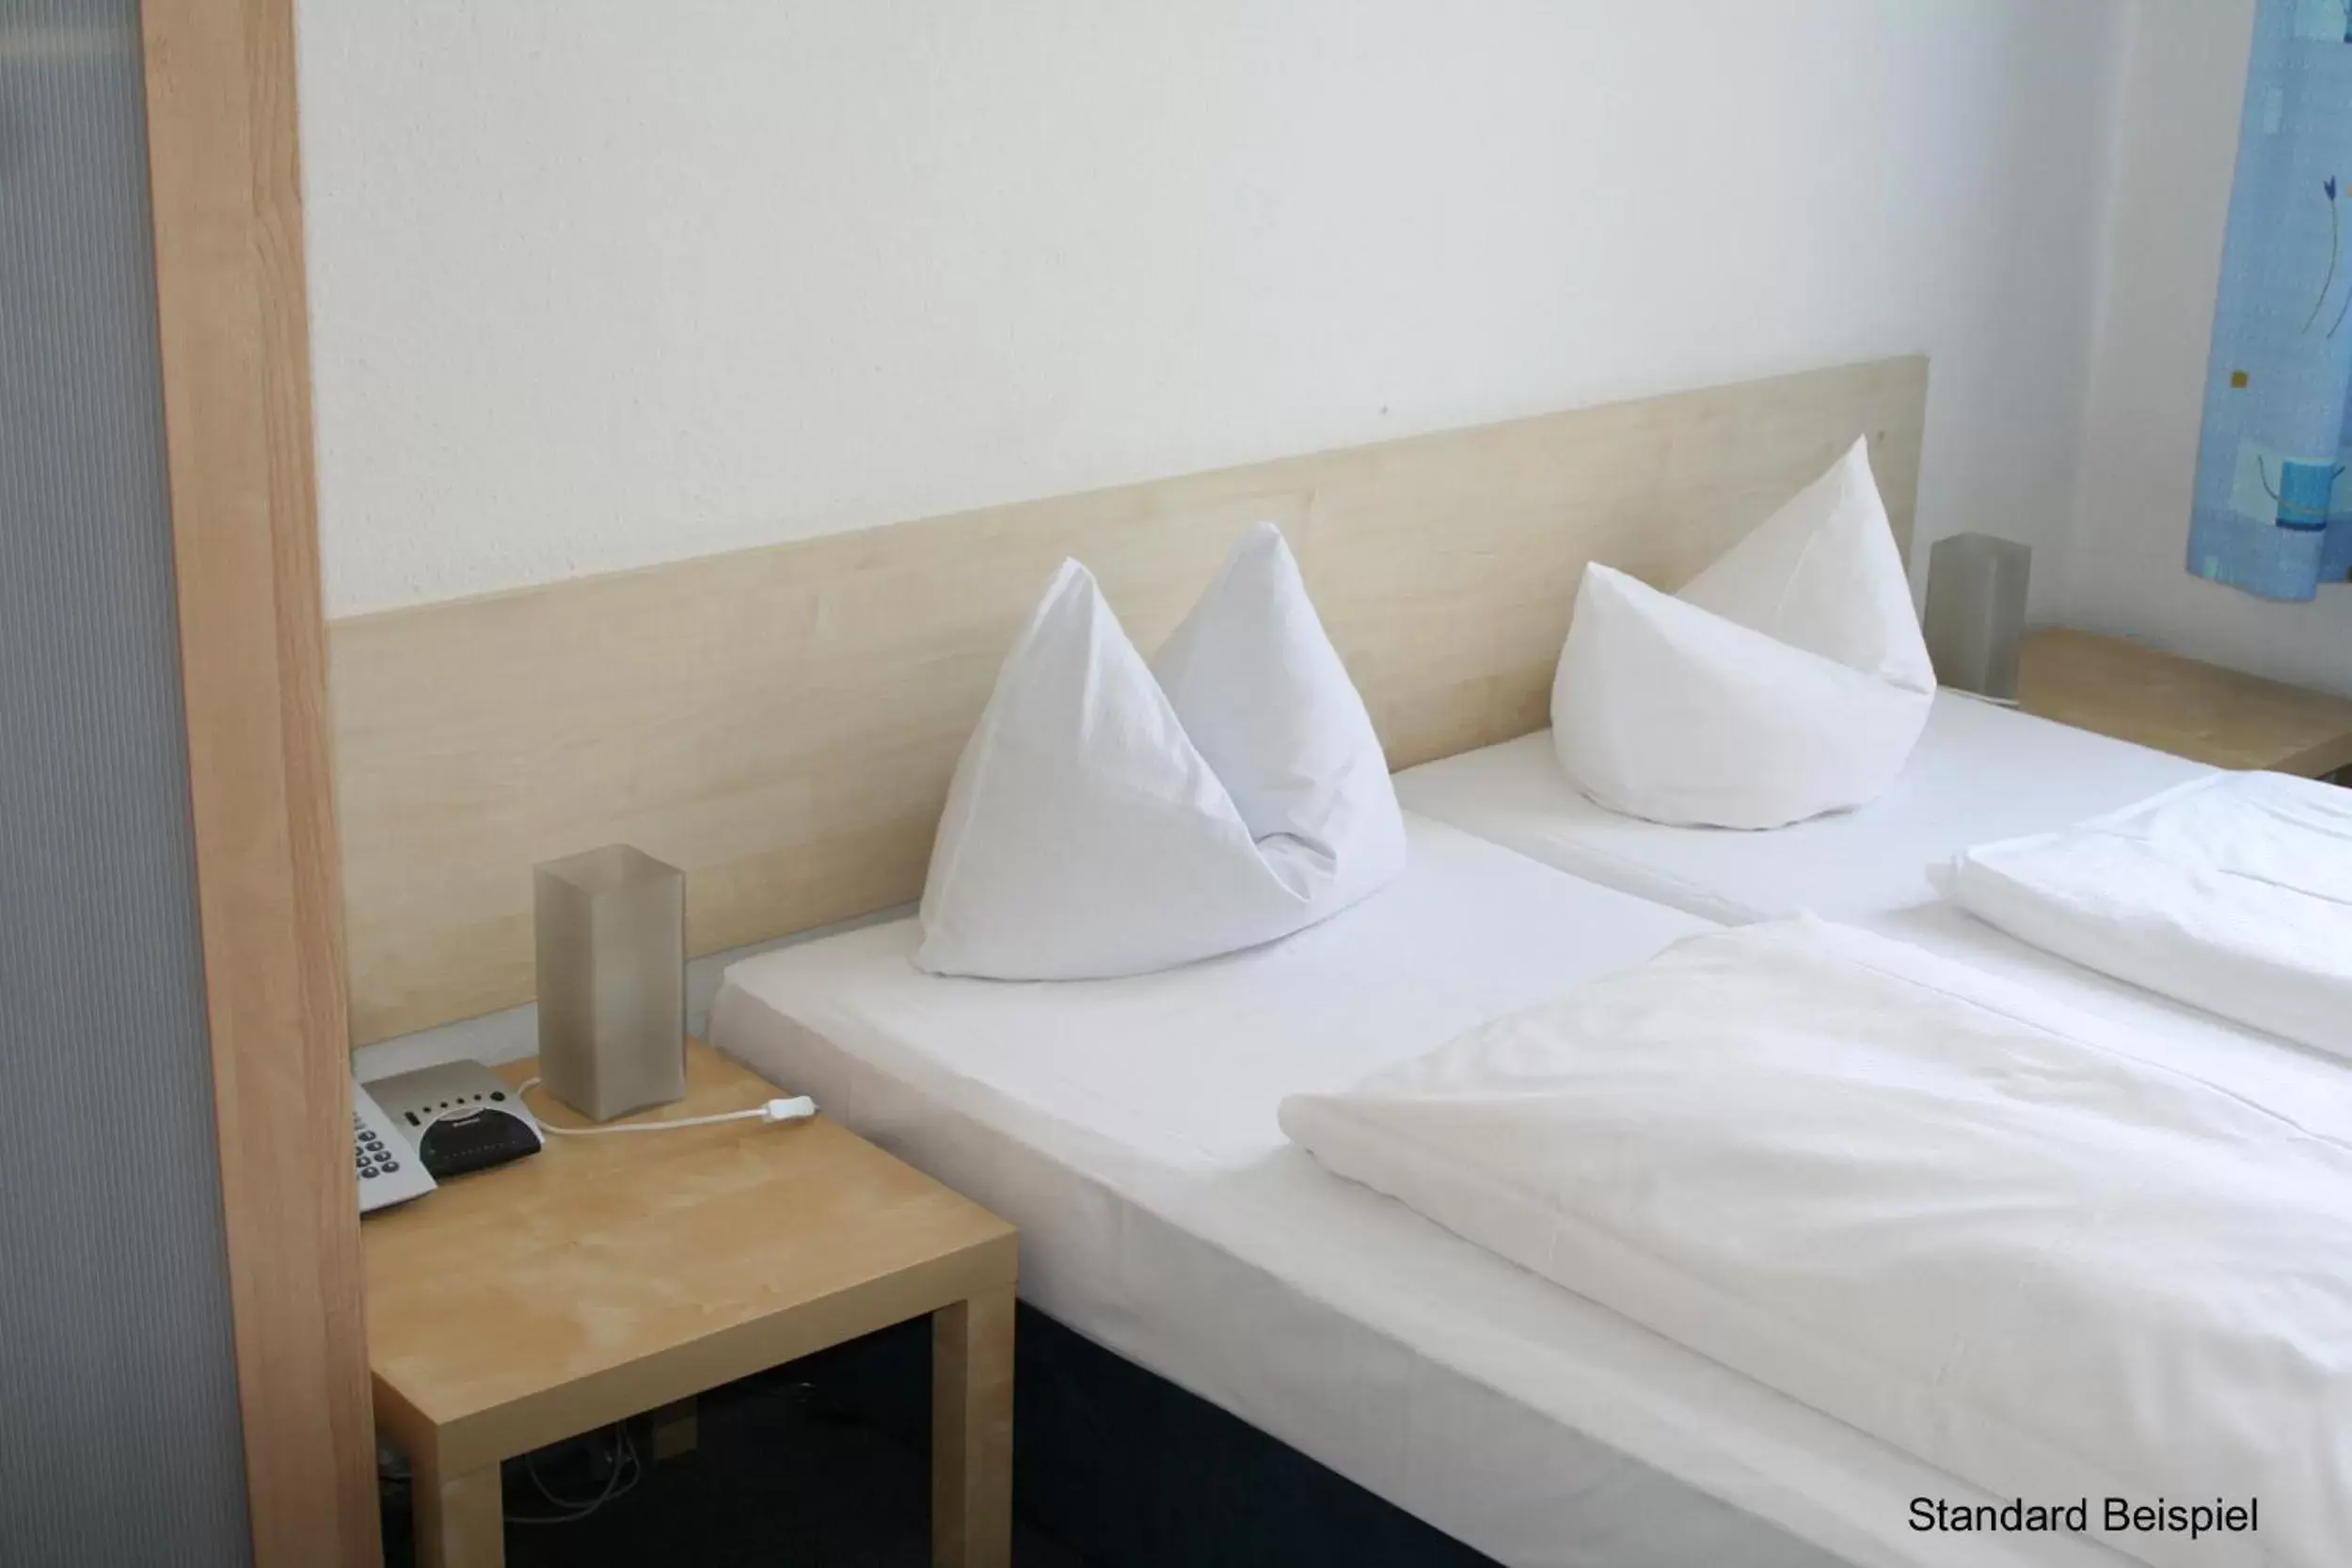 Bed in Hotel Seifert Berlin am Kurfürstendamm